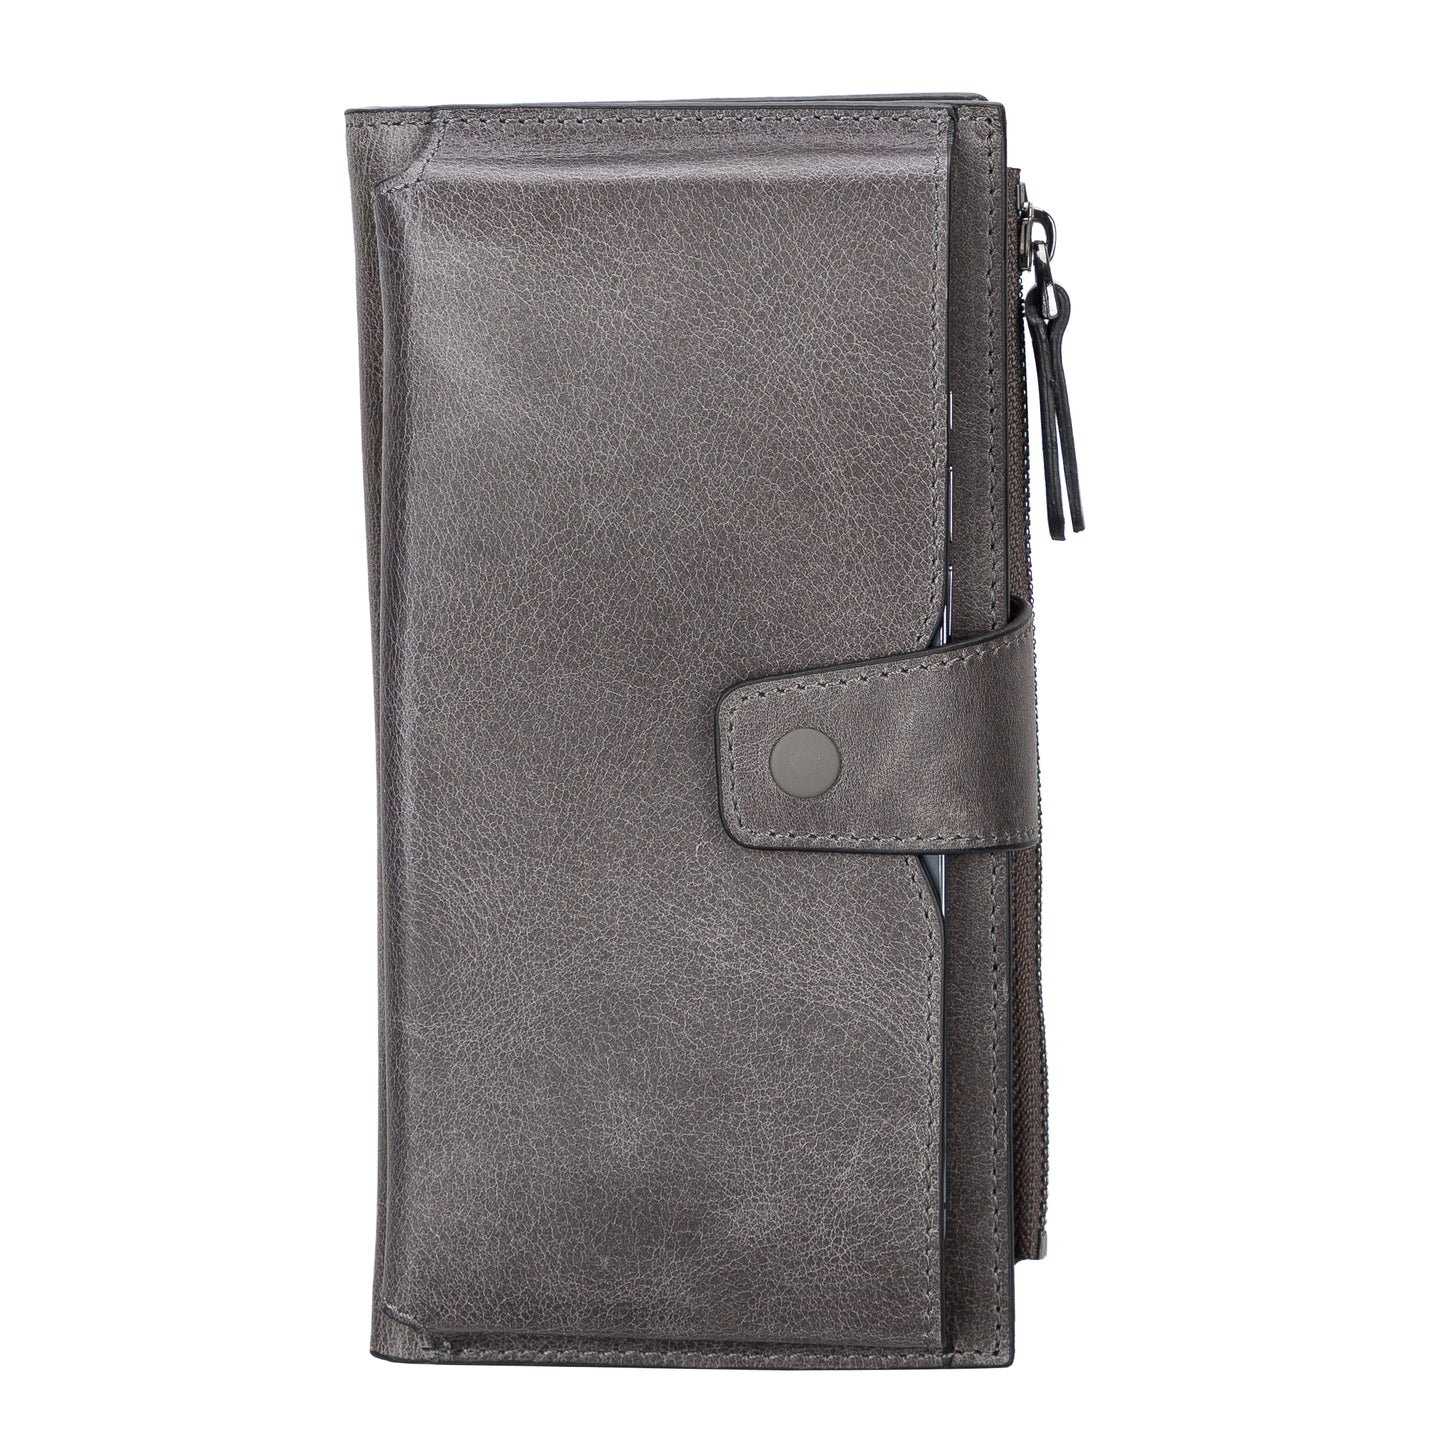 Lozan Leather Women Wallet - Rustic Gray